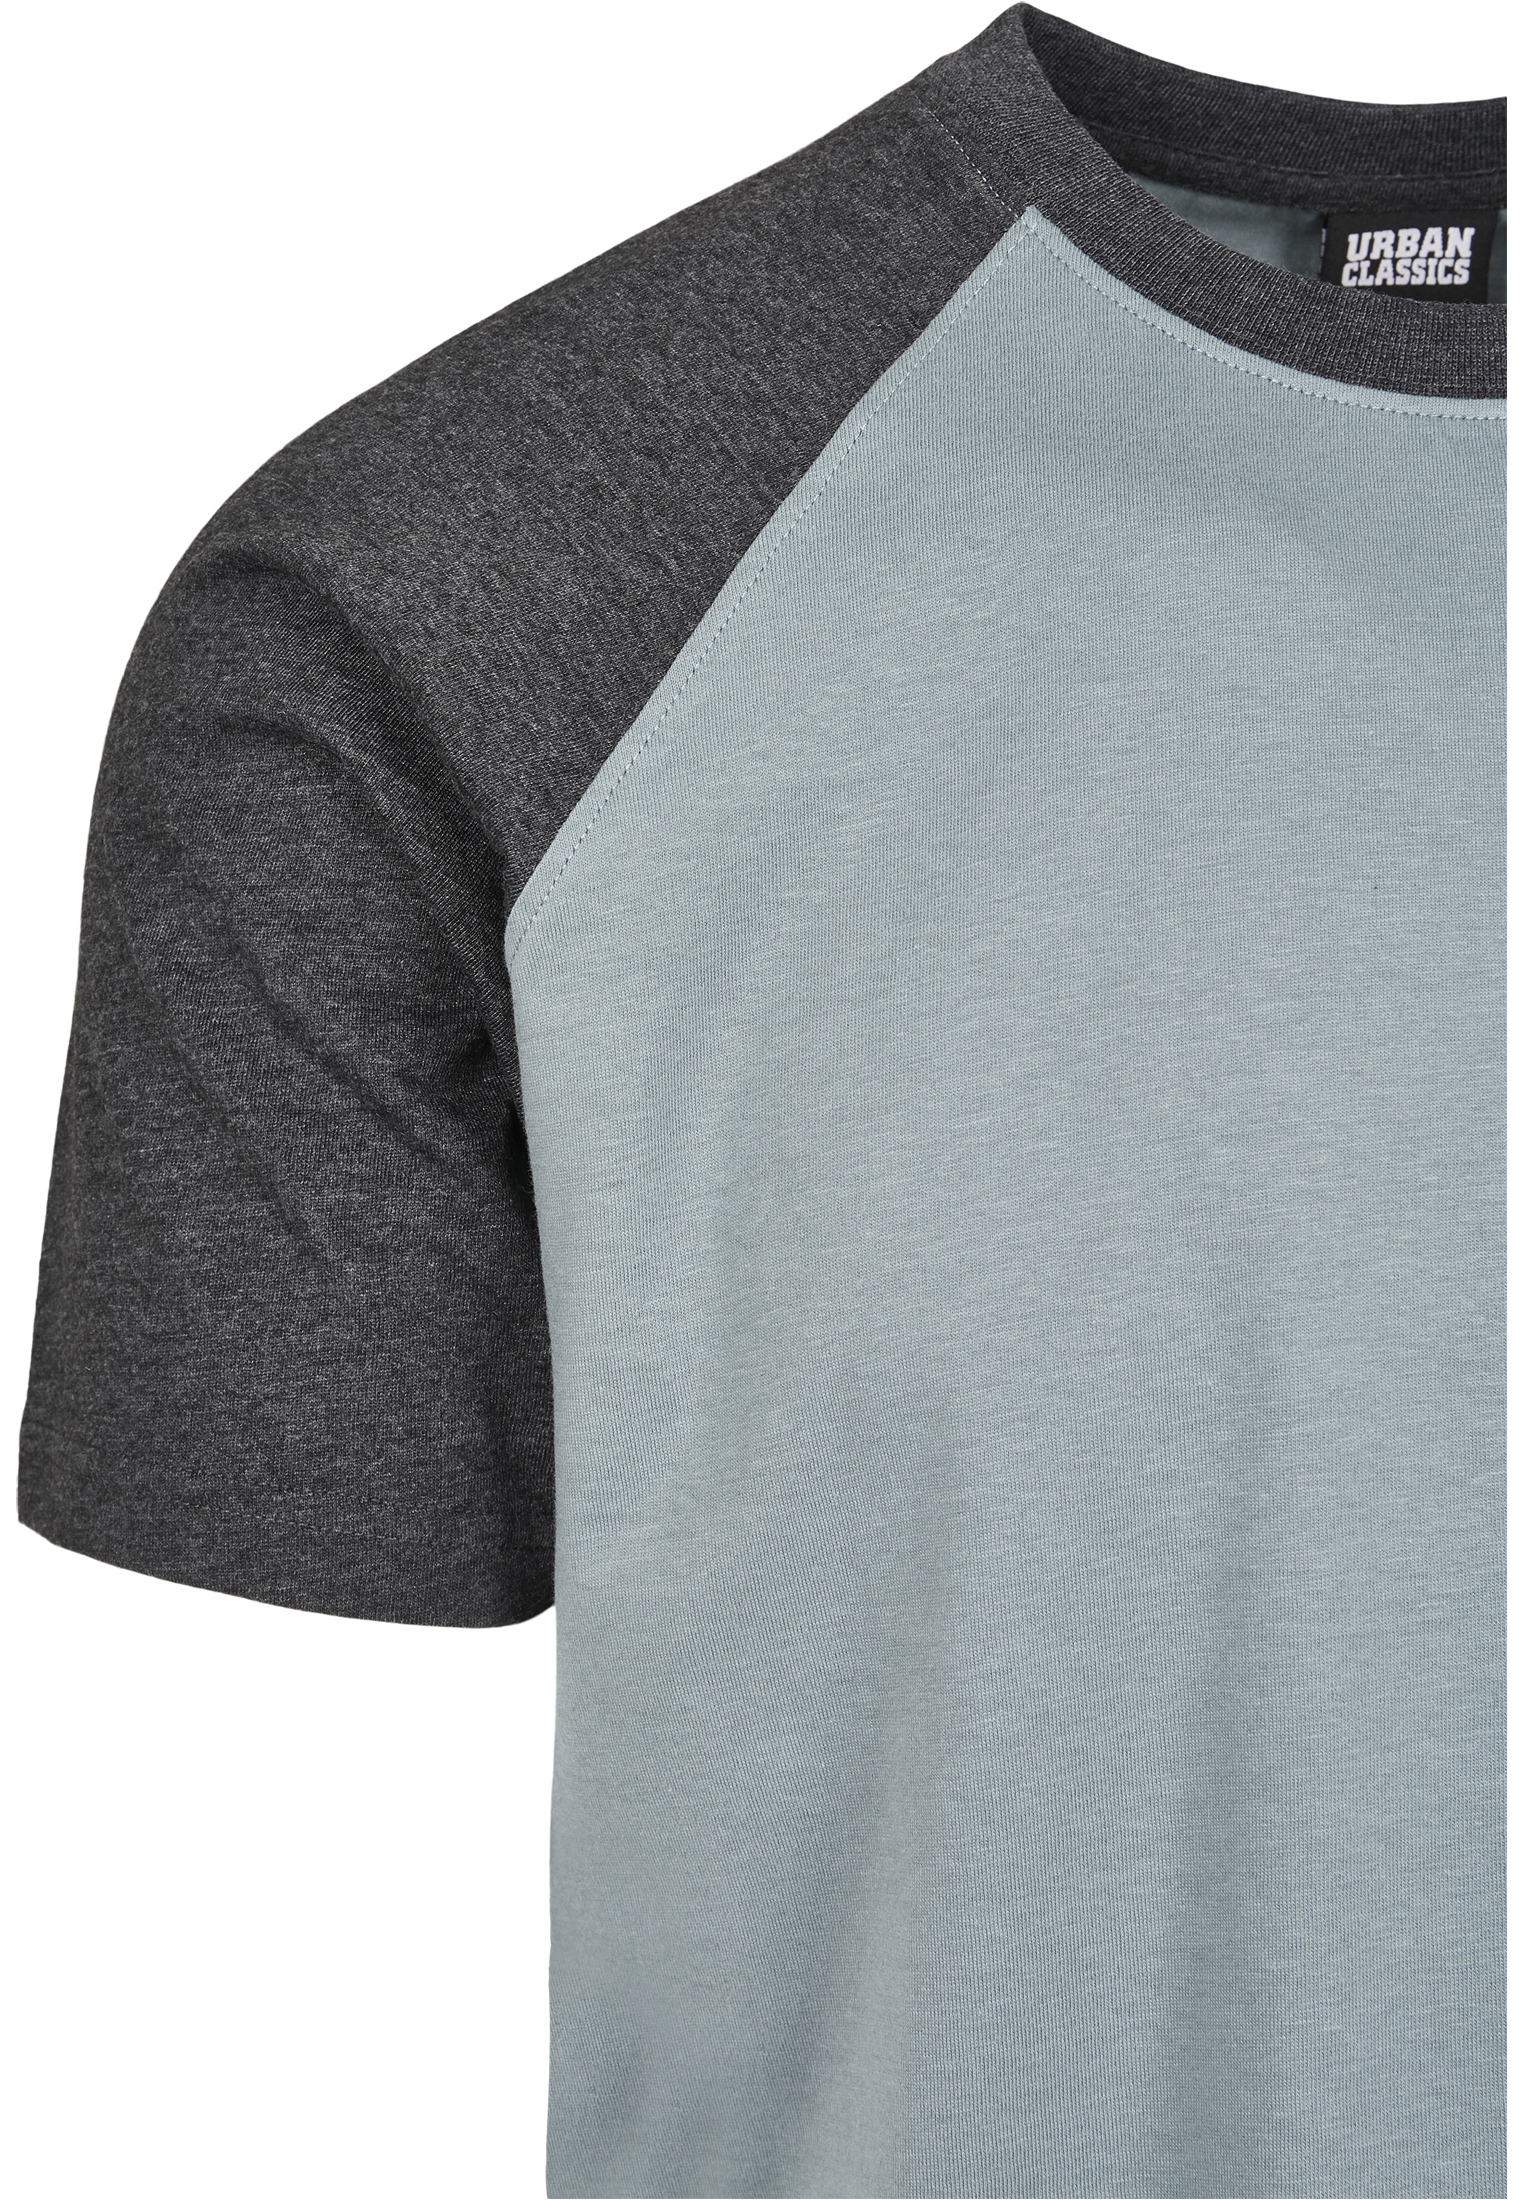 Odzież Mężczyźni Urban Classics Koszulka w kolorze Opalm 